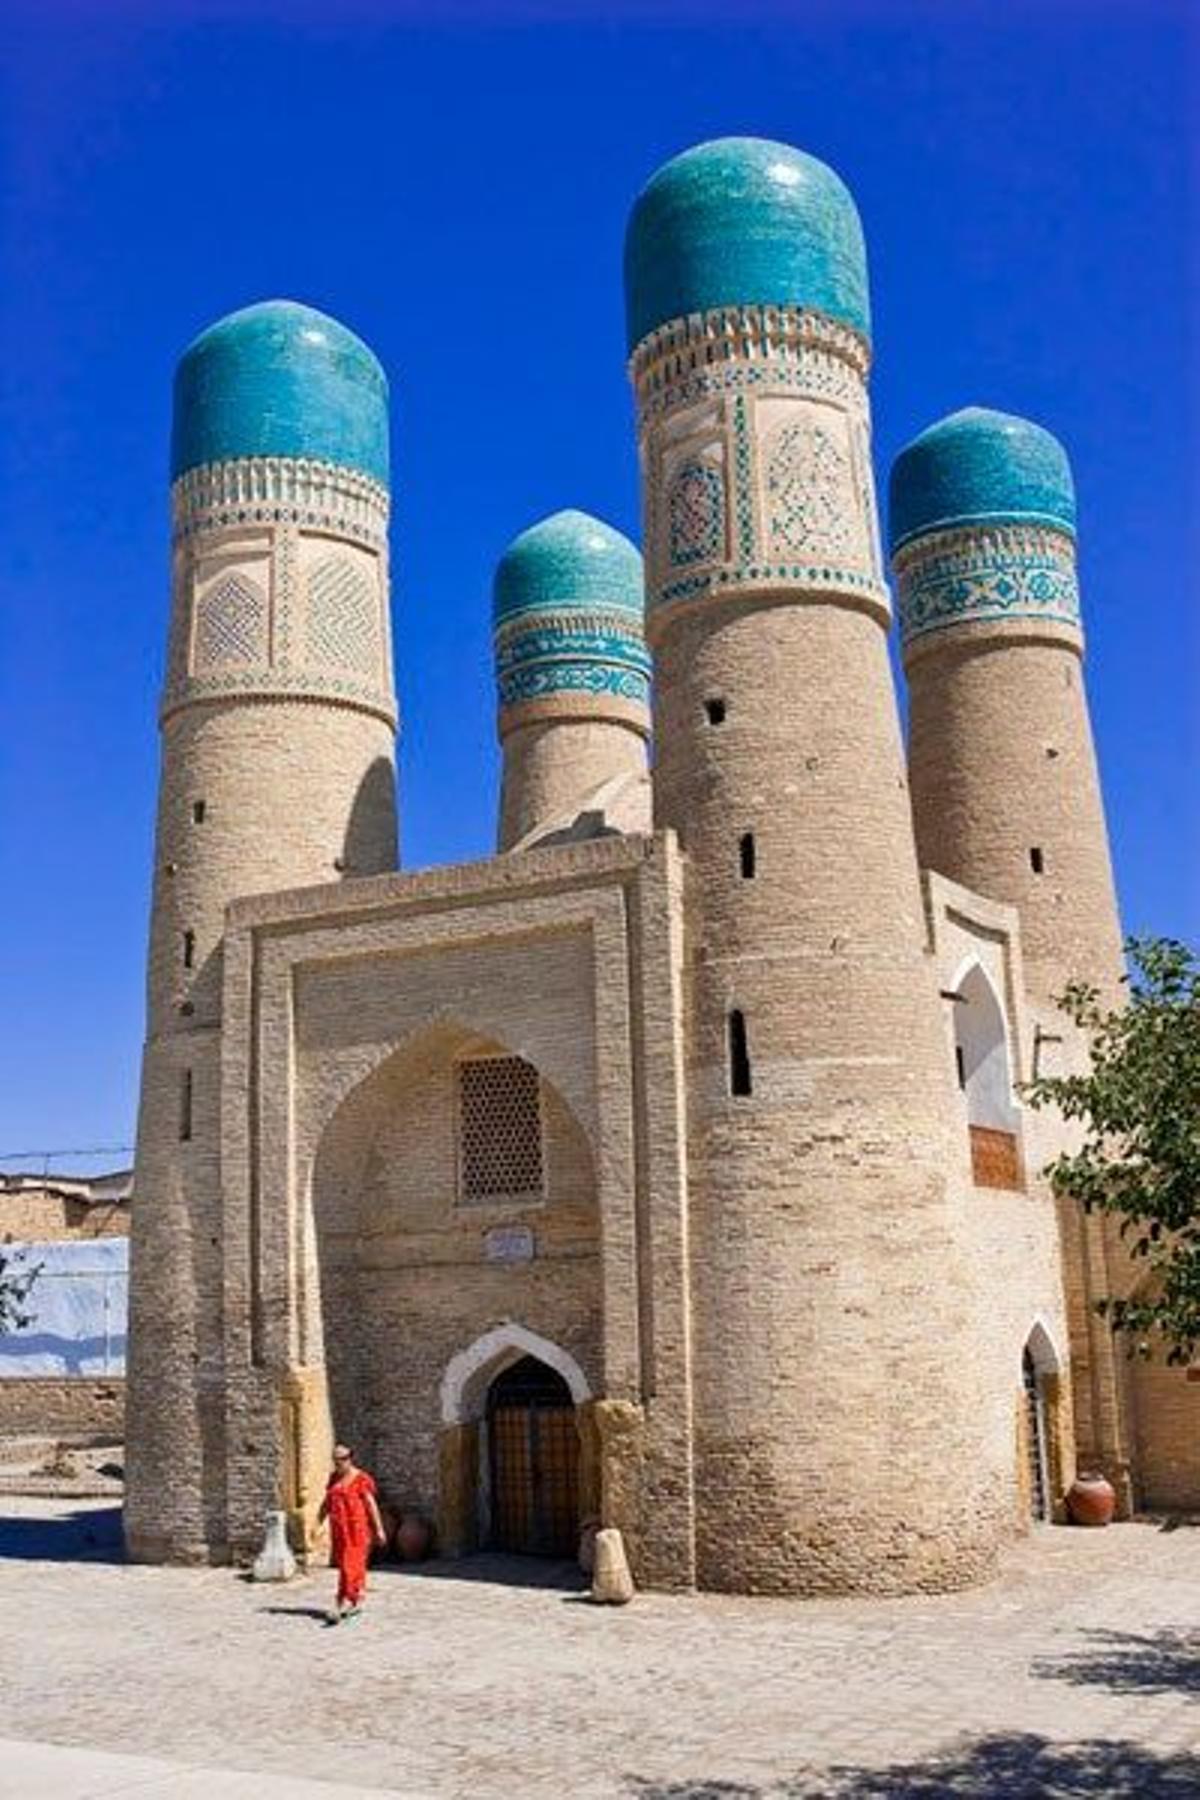 Madraza de Chor Minor de Bukhara.